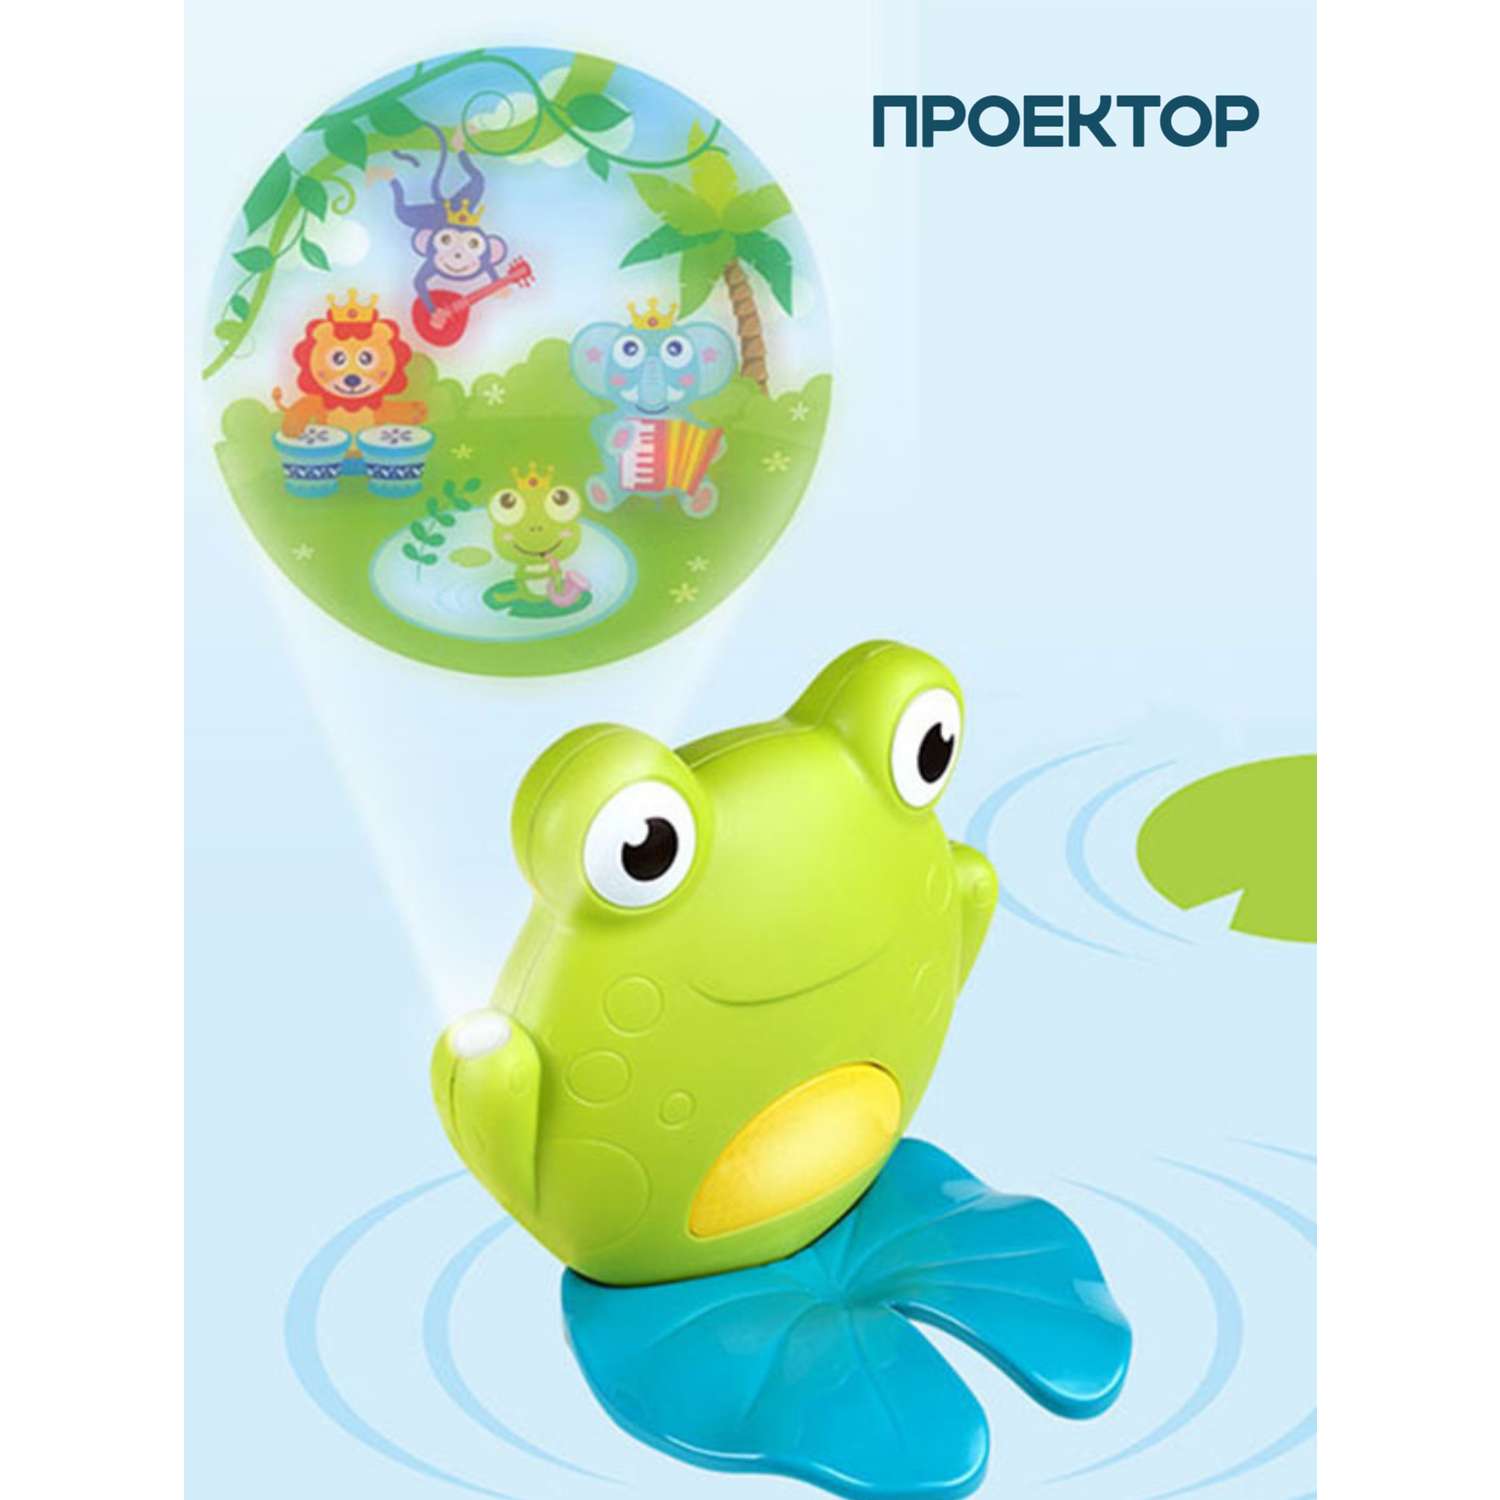 Детский музыкальный мобиль ТОТОША лягушка карусель с проектором и музыкой - фото 3